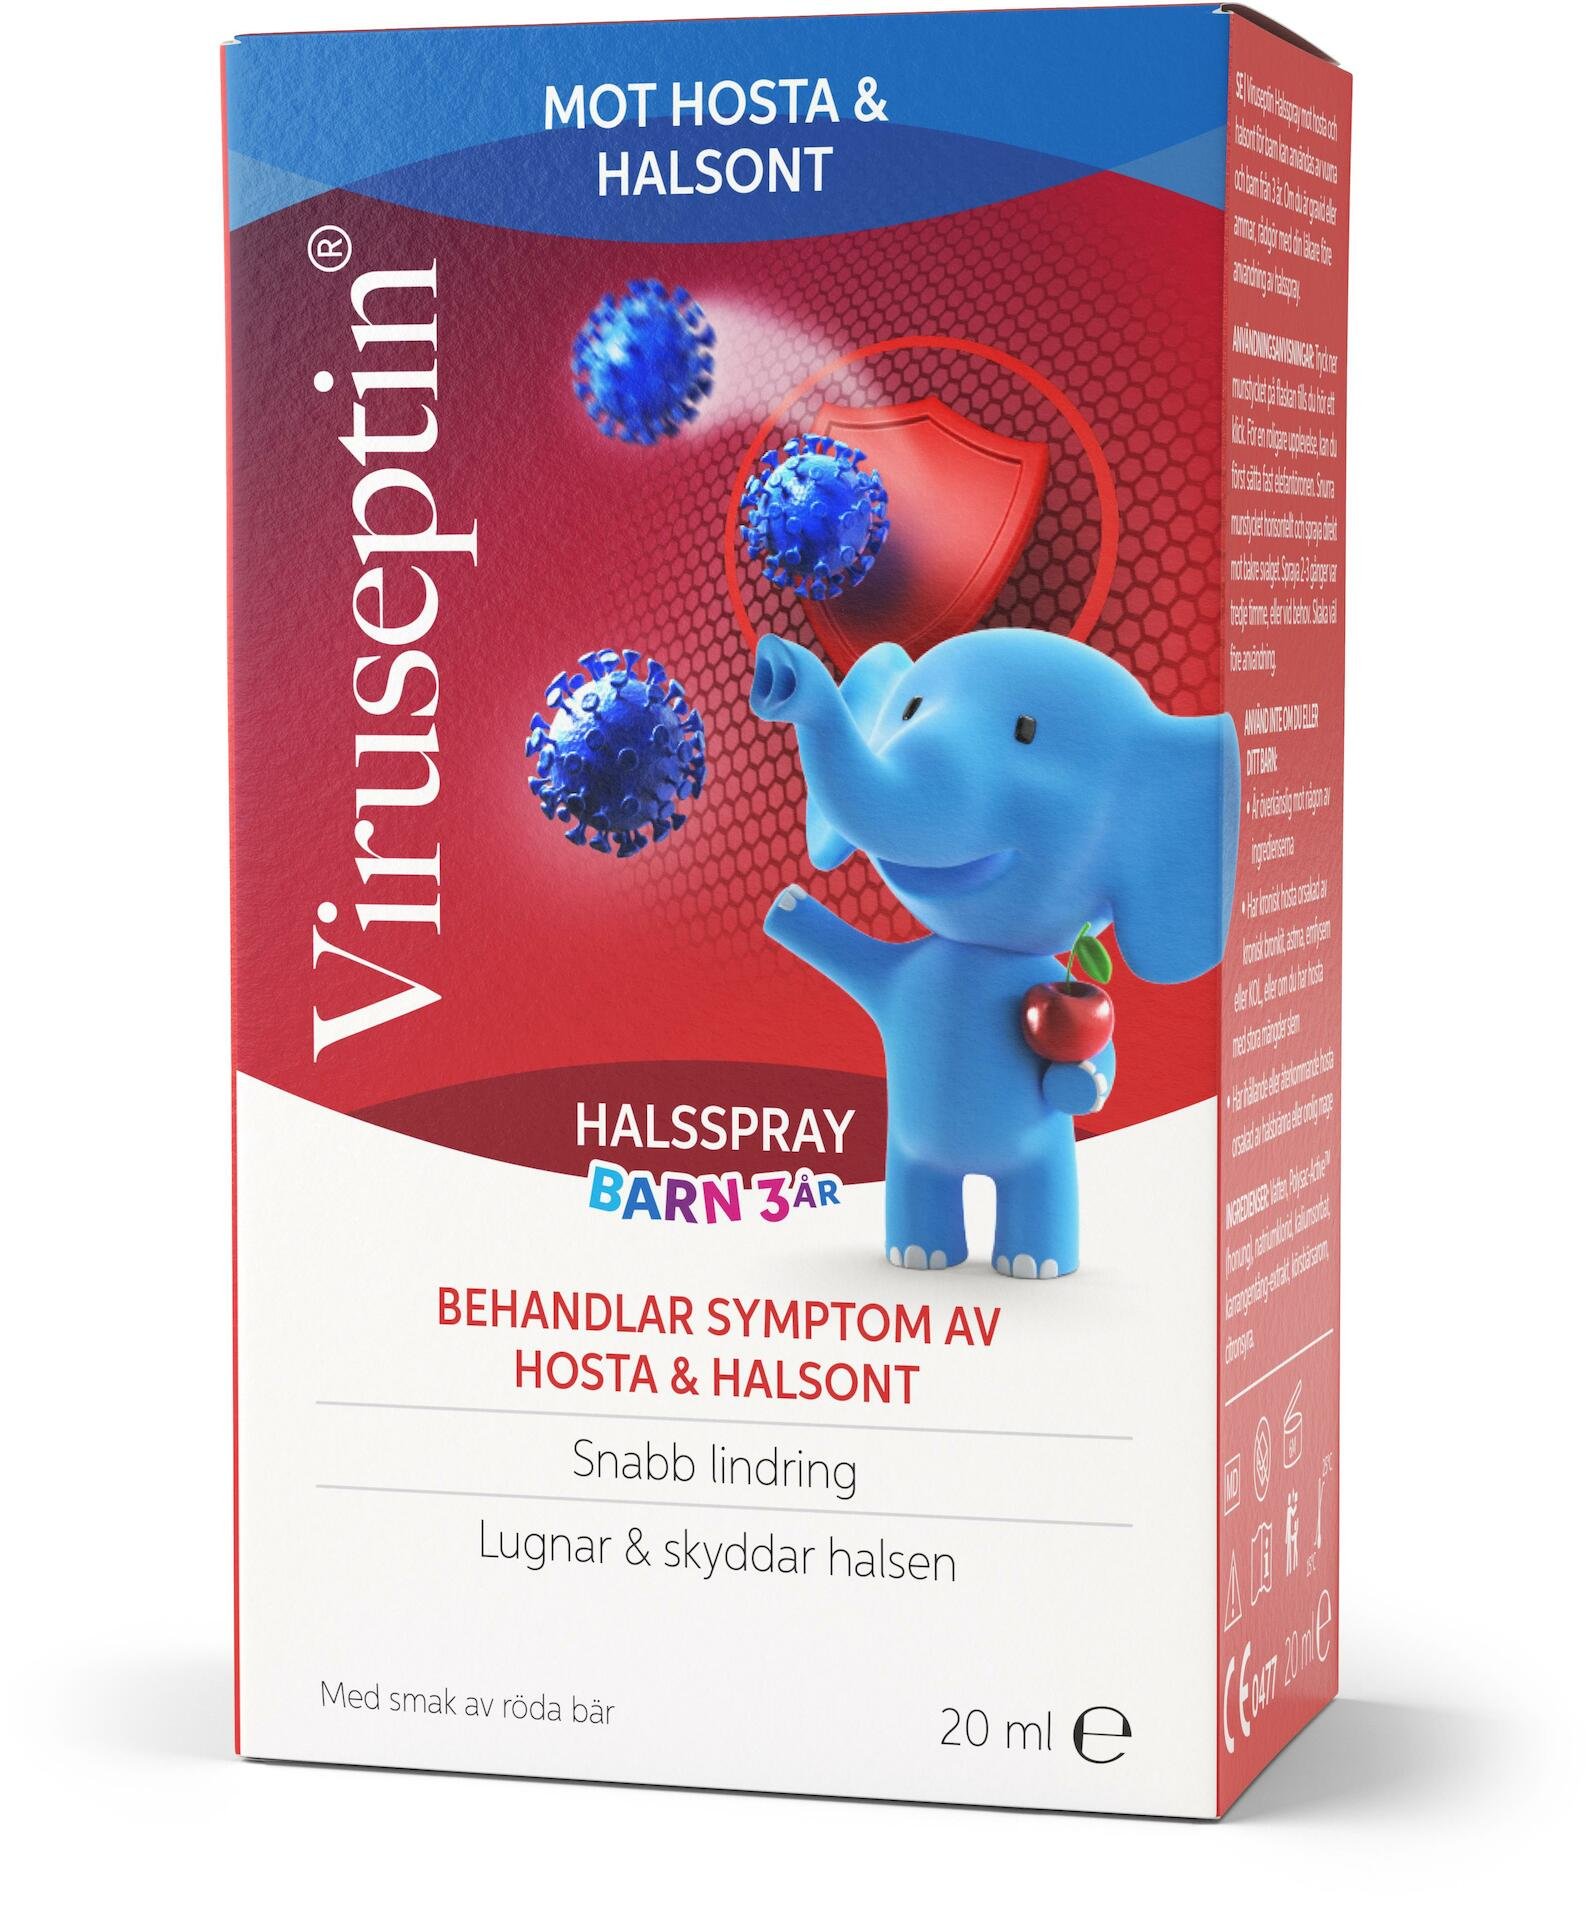 Viruseptin Throat Spray For Kids 20 ml